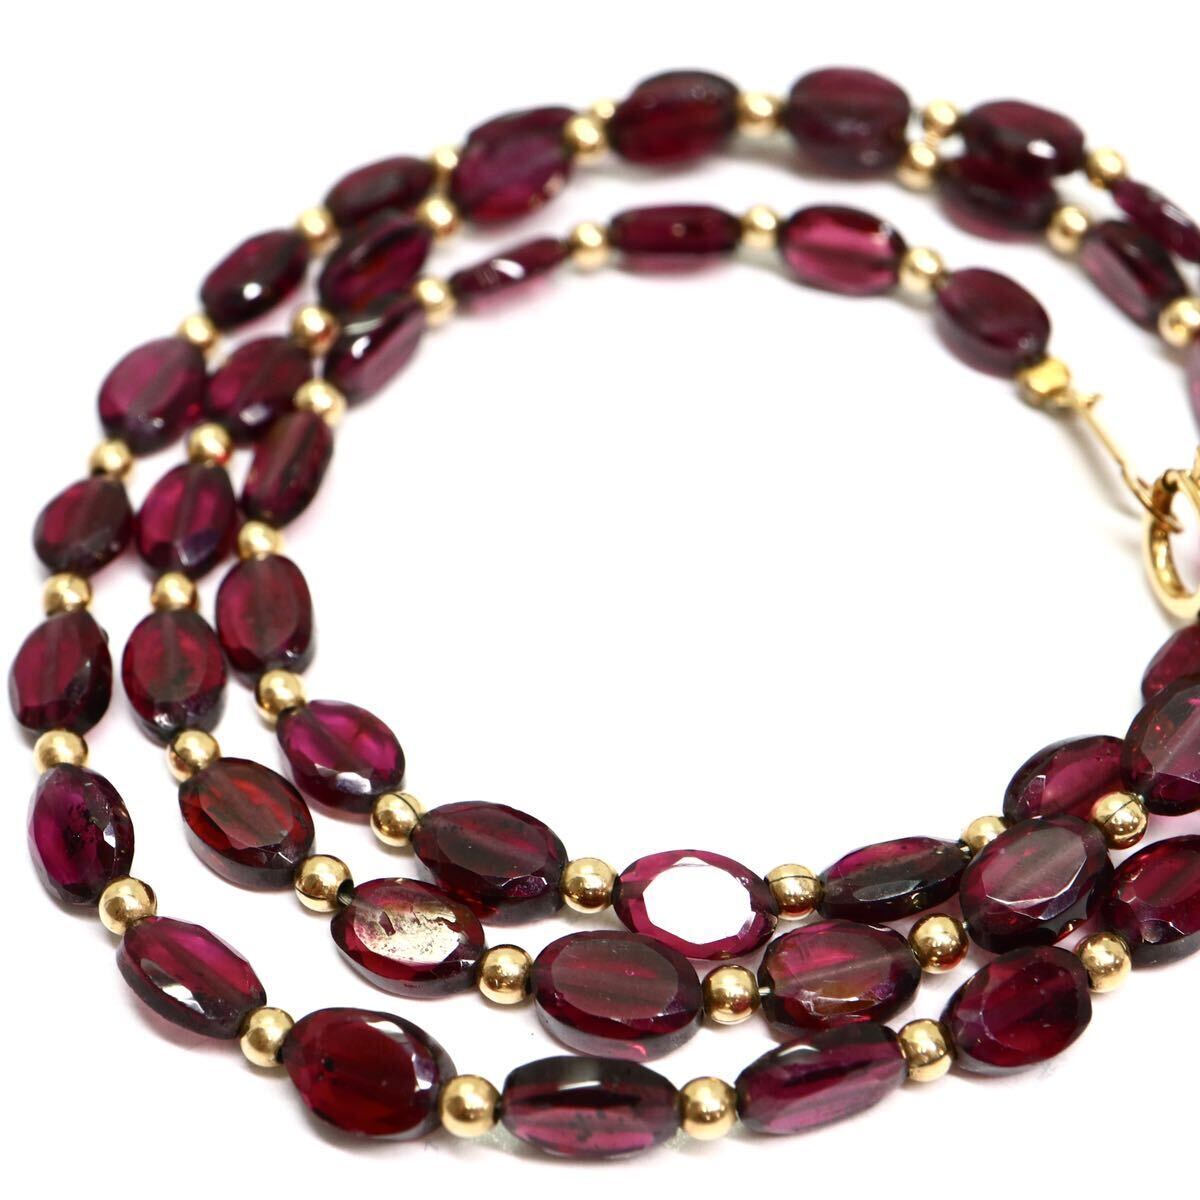 《K18 天然ガーネットネックレス》A 約8.5g 約41cm garnet necklace ジュエリー jewelry DD0/DH0☆の画像1